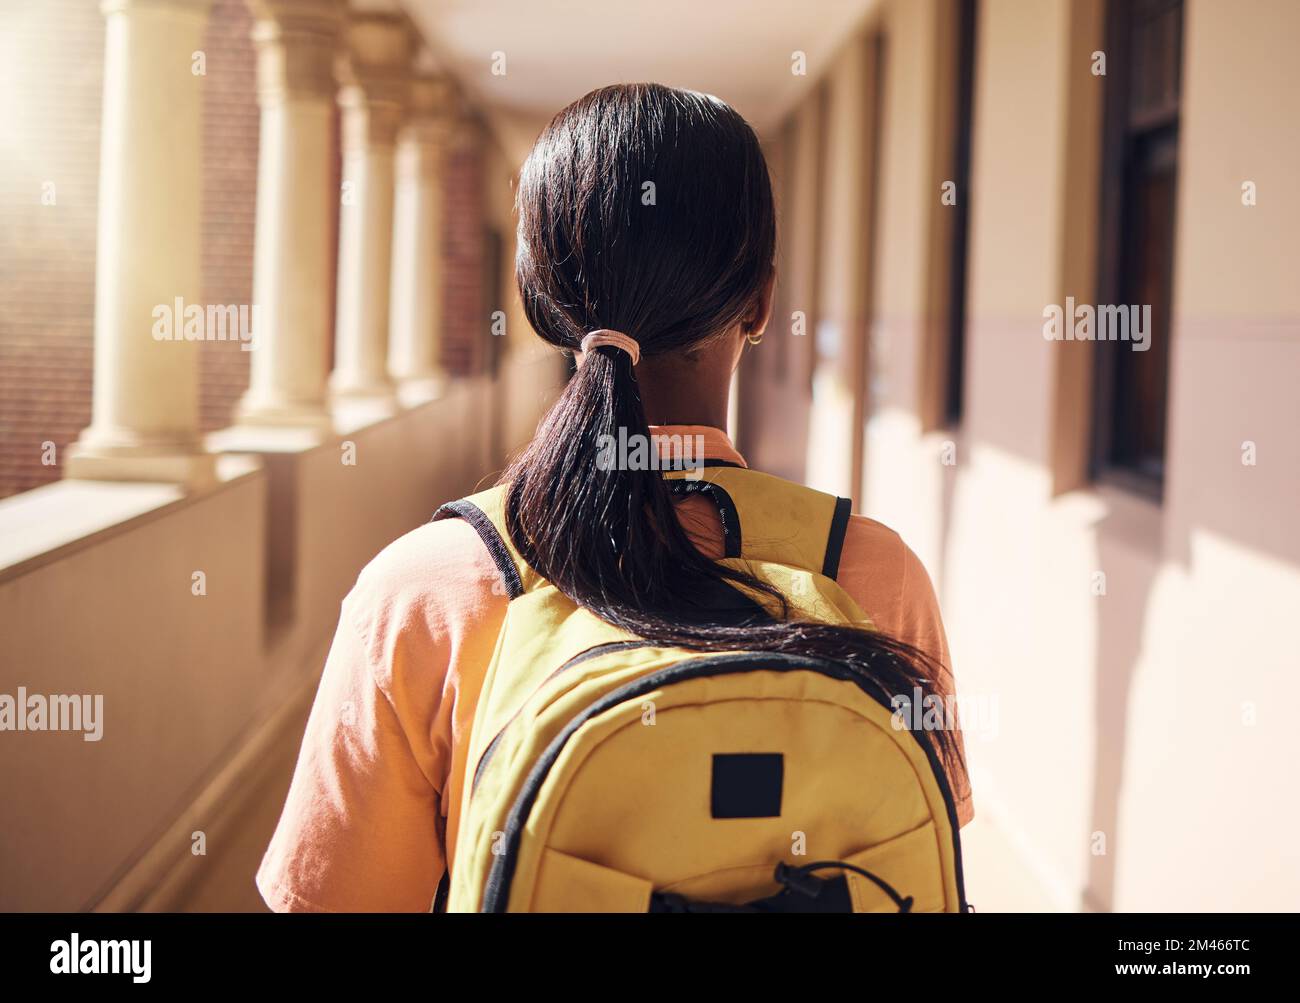 College, zaino e istruzione con donna nera nel corridoio della scuola per l'apprendimento, la borsa di studio e il futuro. Visione, obiettivo e conoscenza con l'università Foto Stock